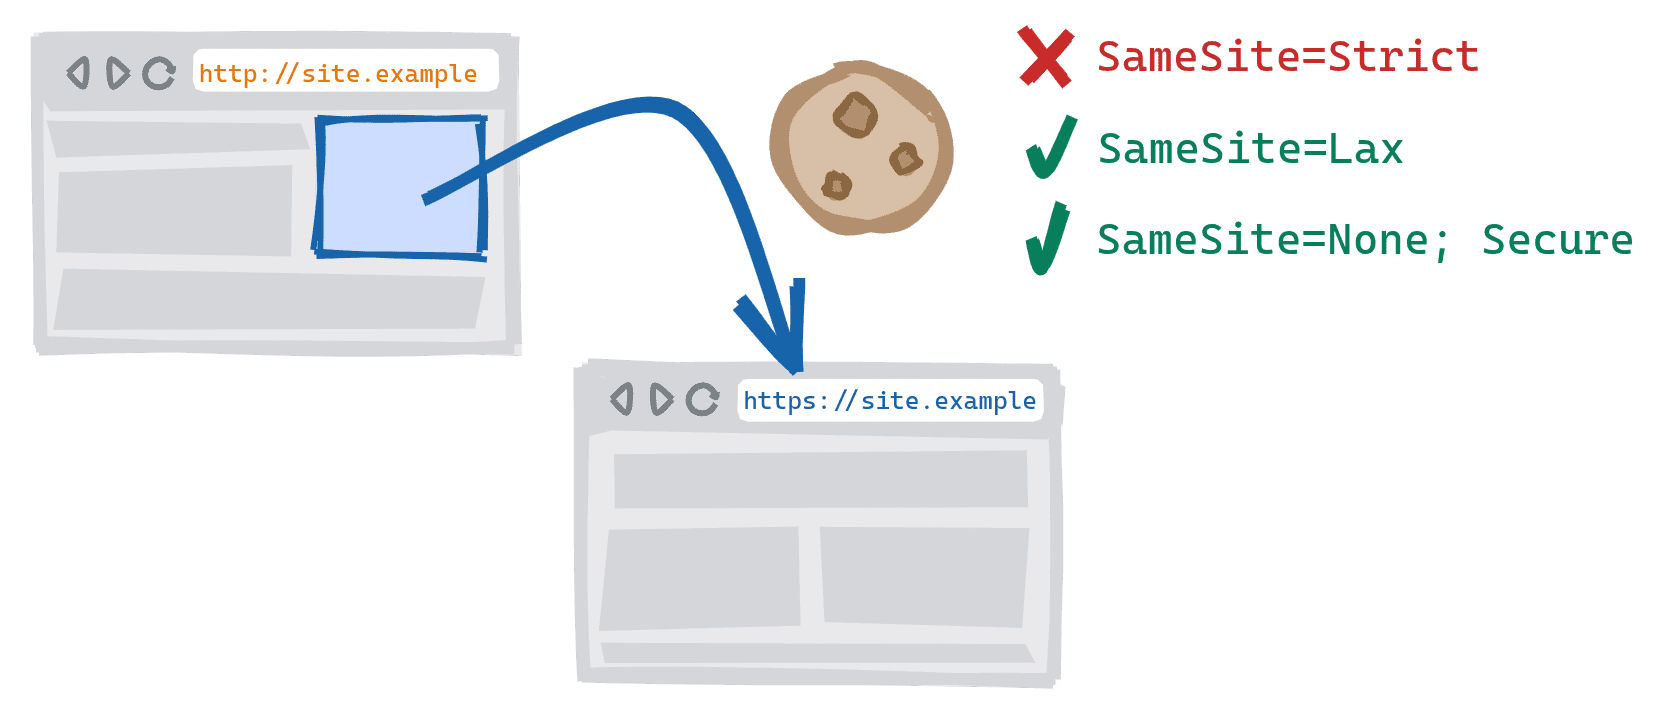 การนำทางแบบข้ามรูปแบบที่ทริกเกอร์โดยการติดตามลิงก์บนเว็บไซต์เวอร์ชัน HTTP ที่ไม่ปลอดภัยไปยังเวอร์ชัน HTTPS ที่ปลอดภัย SameSite=Strict คุกกี้ที่ถูกบล็อก, SameSite=Lax และ SameSite=None; อนุญาตคุกกี้ที่ปลอดภัย